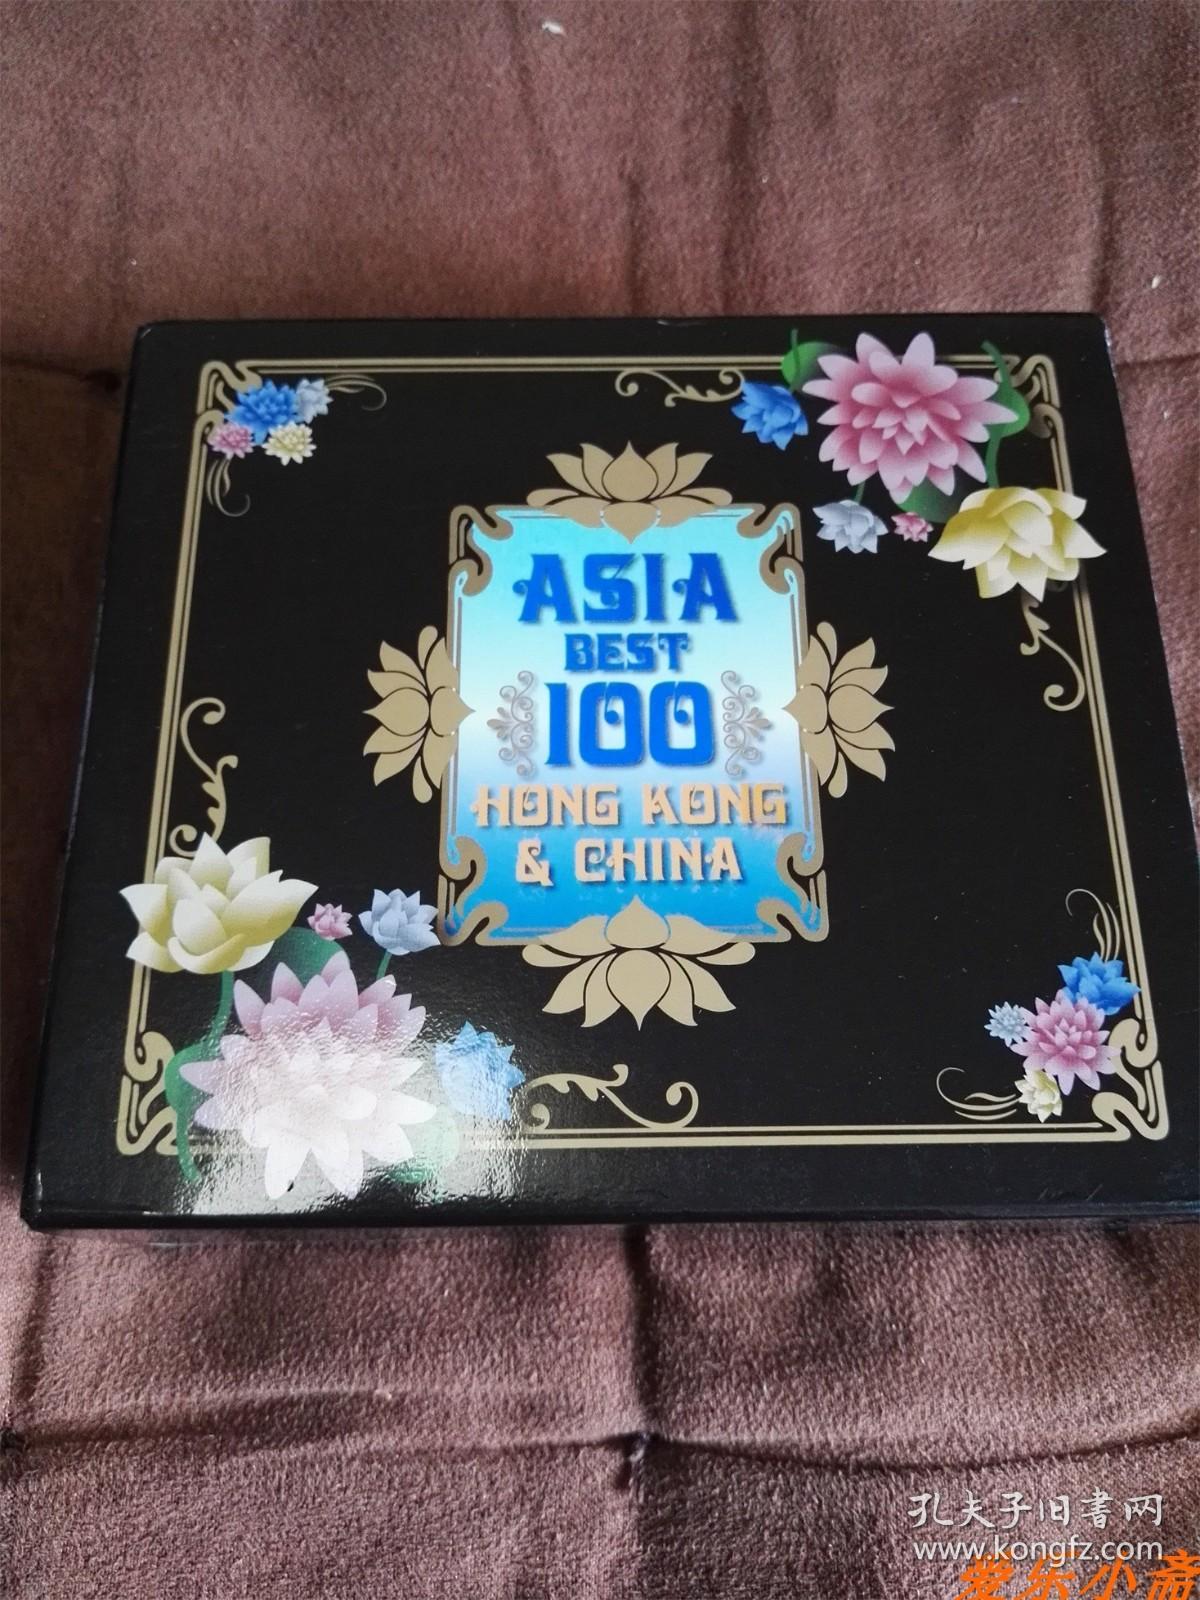 稀绝珍藏 SONY 香港&大陆精选100首/Asia Best 100 Hong Kong&China 6CD 日本土首版